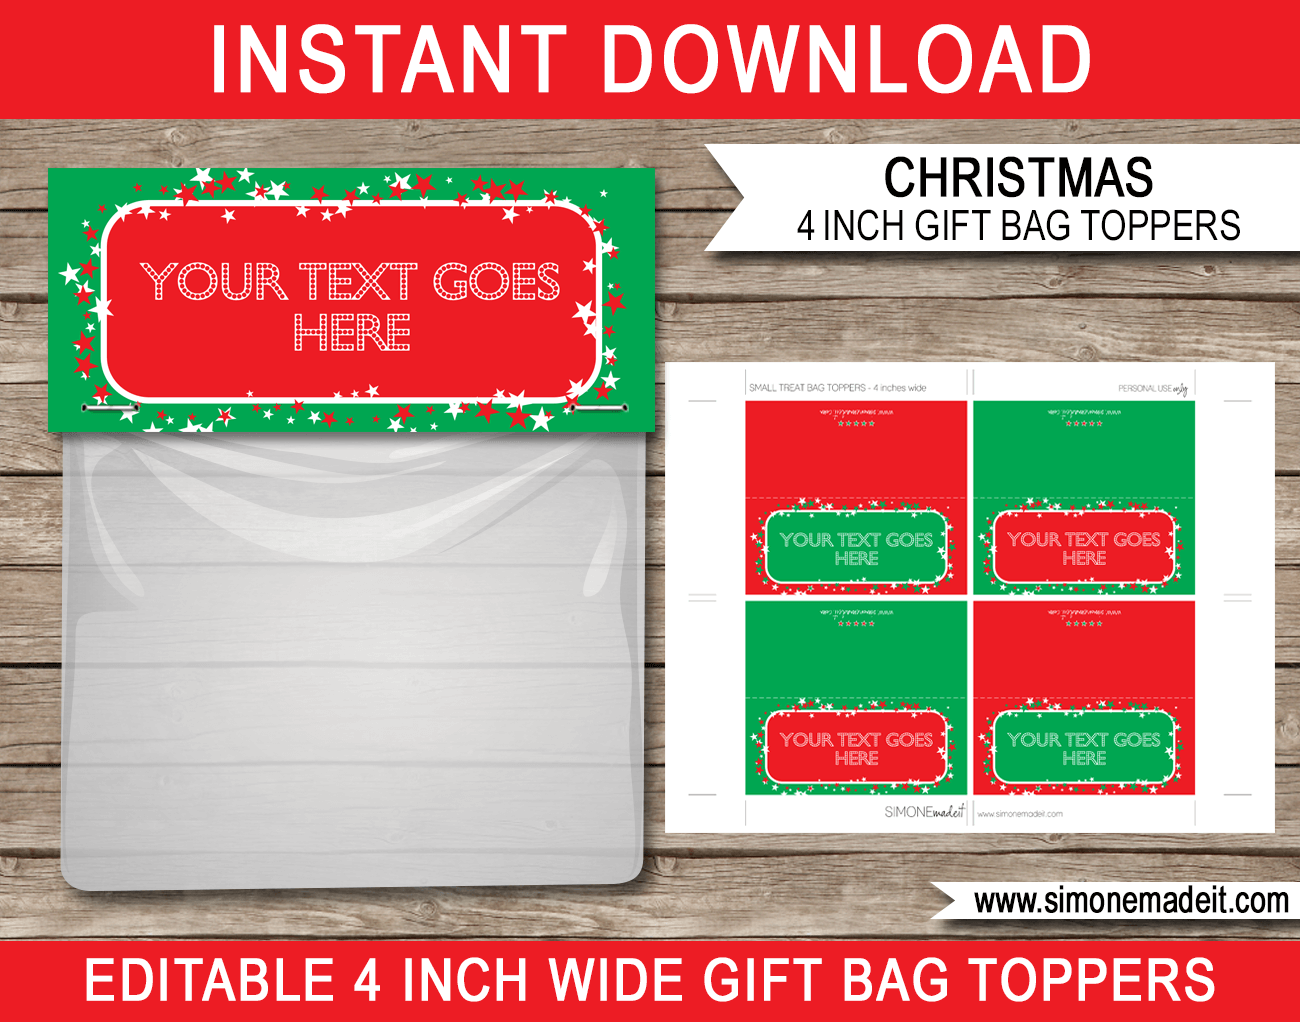 Christmas Gift Bag Toppers | Printable Christmas Gift Tags | Editable Template | INSTANT DOWNLOAD via simonemadeit.com